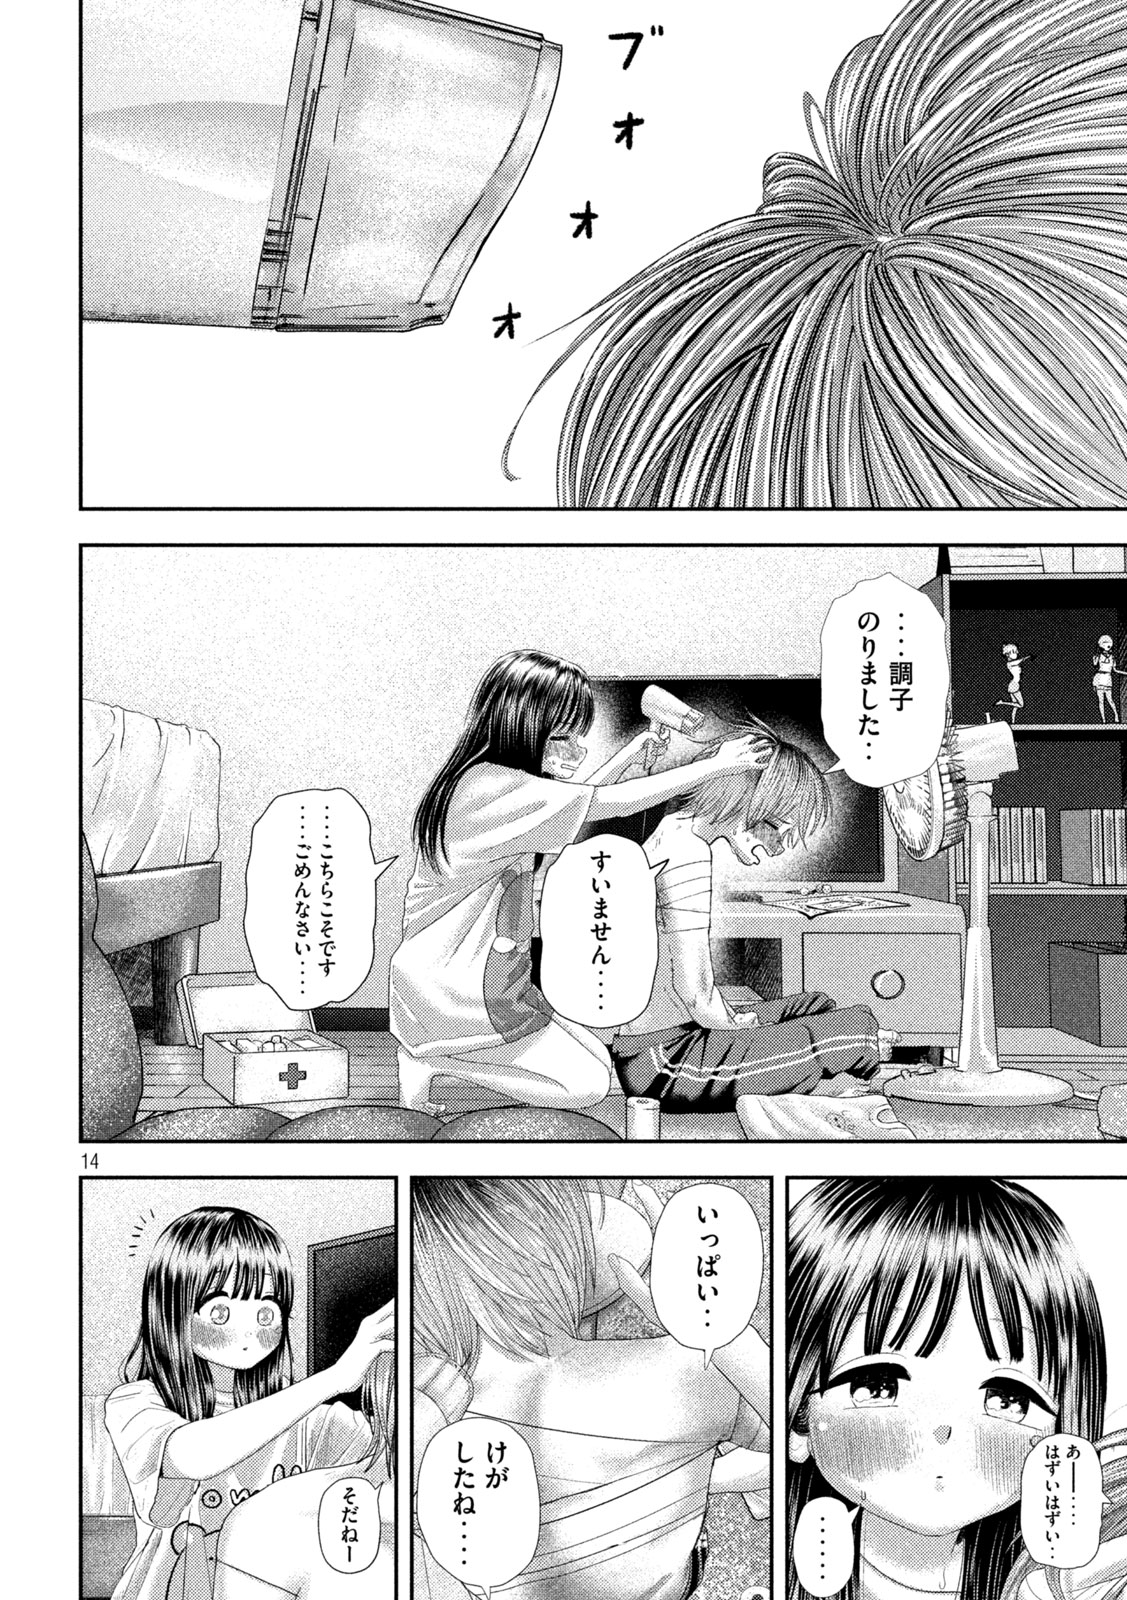 Nezumi no Koi - Chapter 28 - Page 14